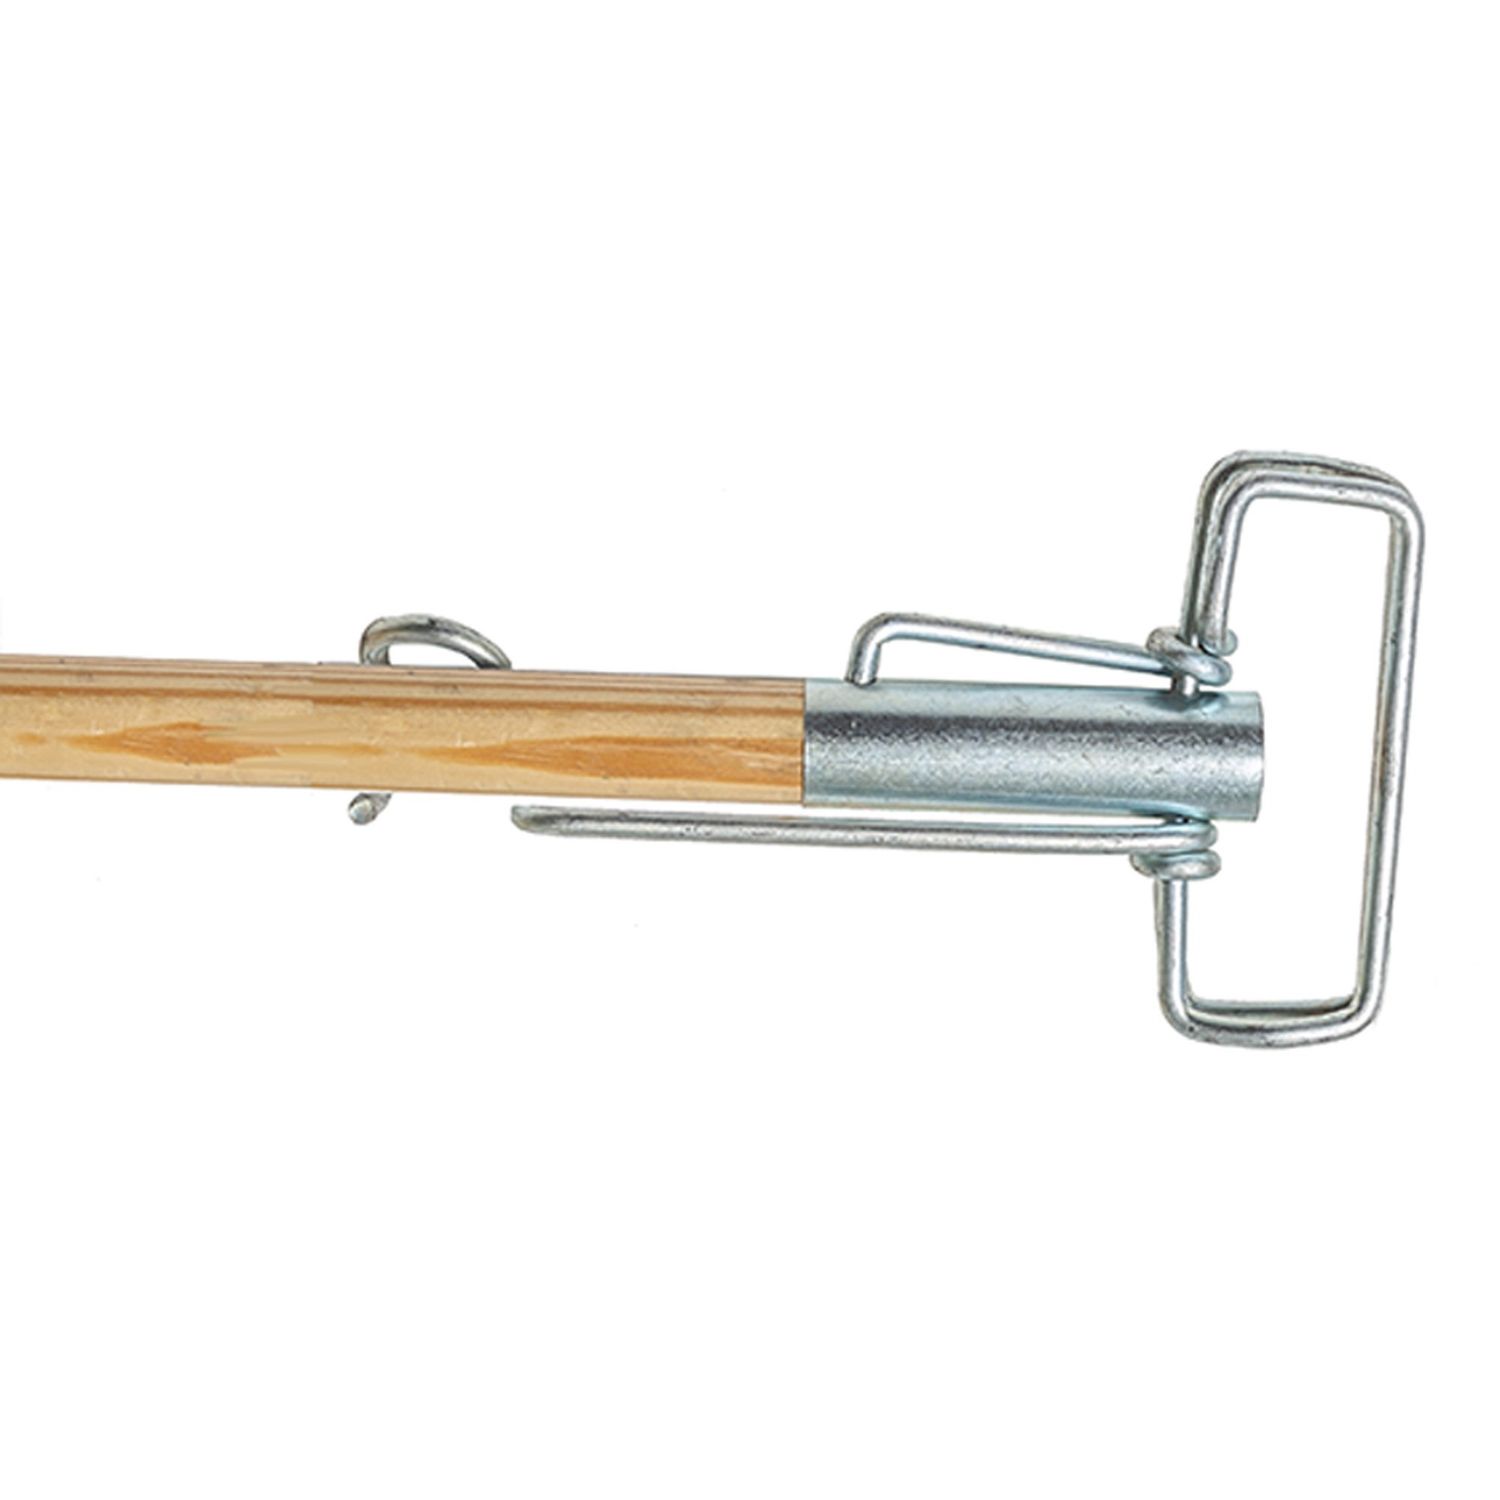 Metal Sure Grip Mop Handle 60" Length, 1.13" Diameter, Brown, Metal, 1 / Each